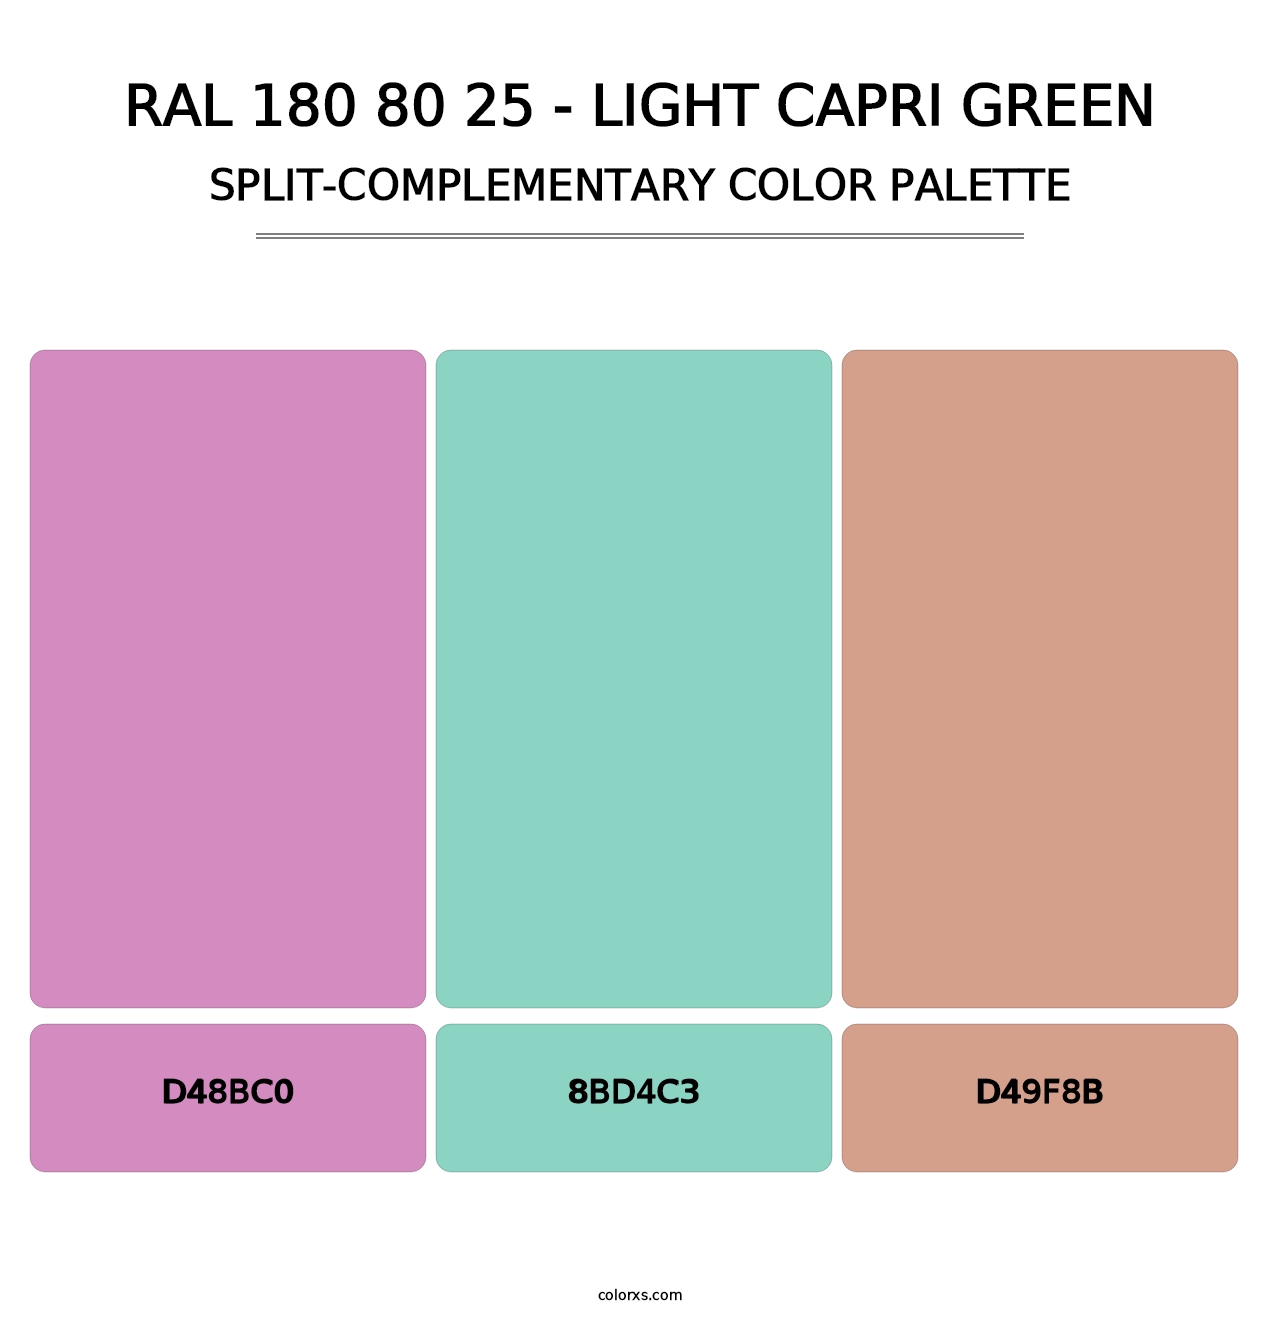 RAL 180 80 25 - Light Capri Green - Split-Complementary Color Palette